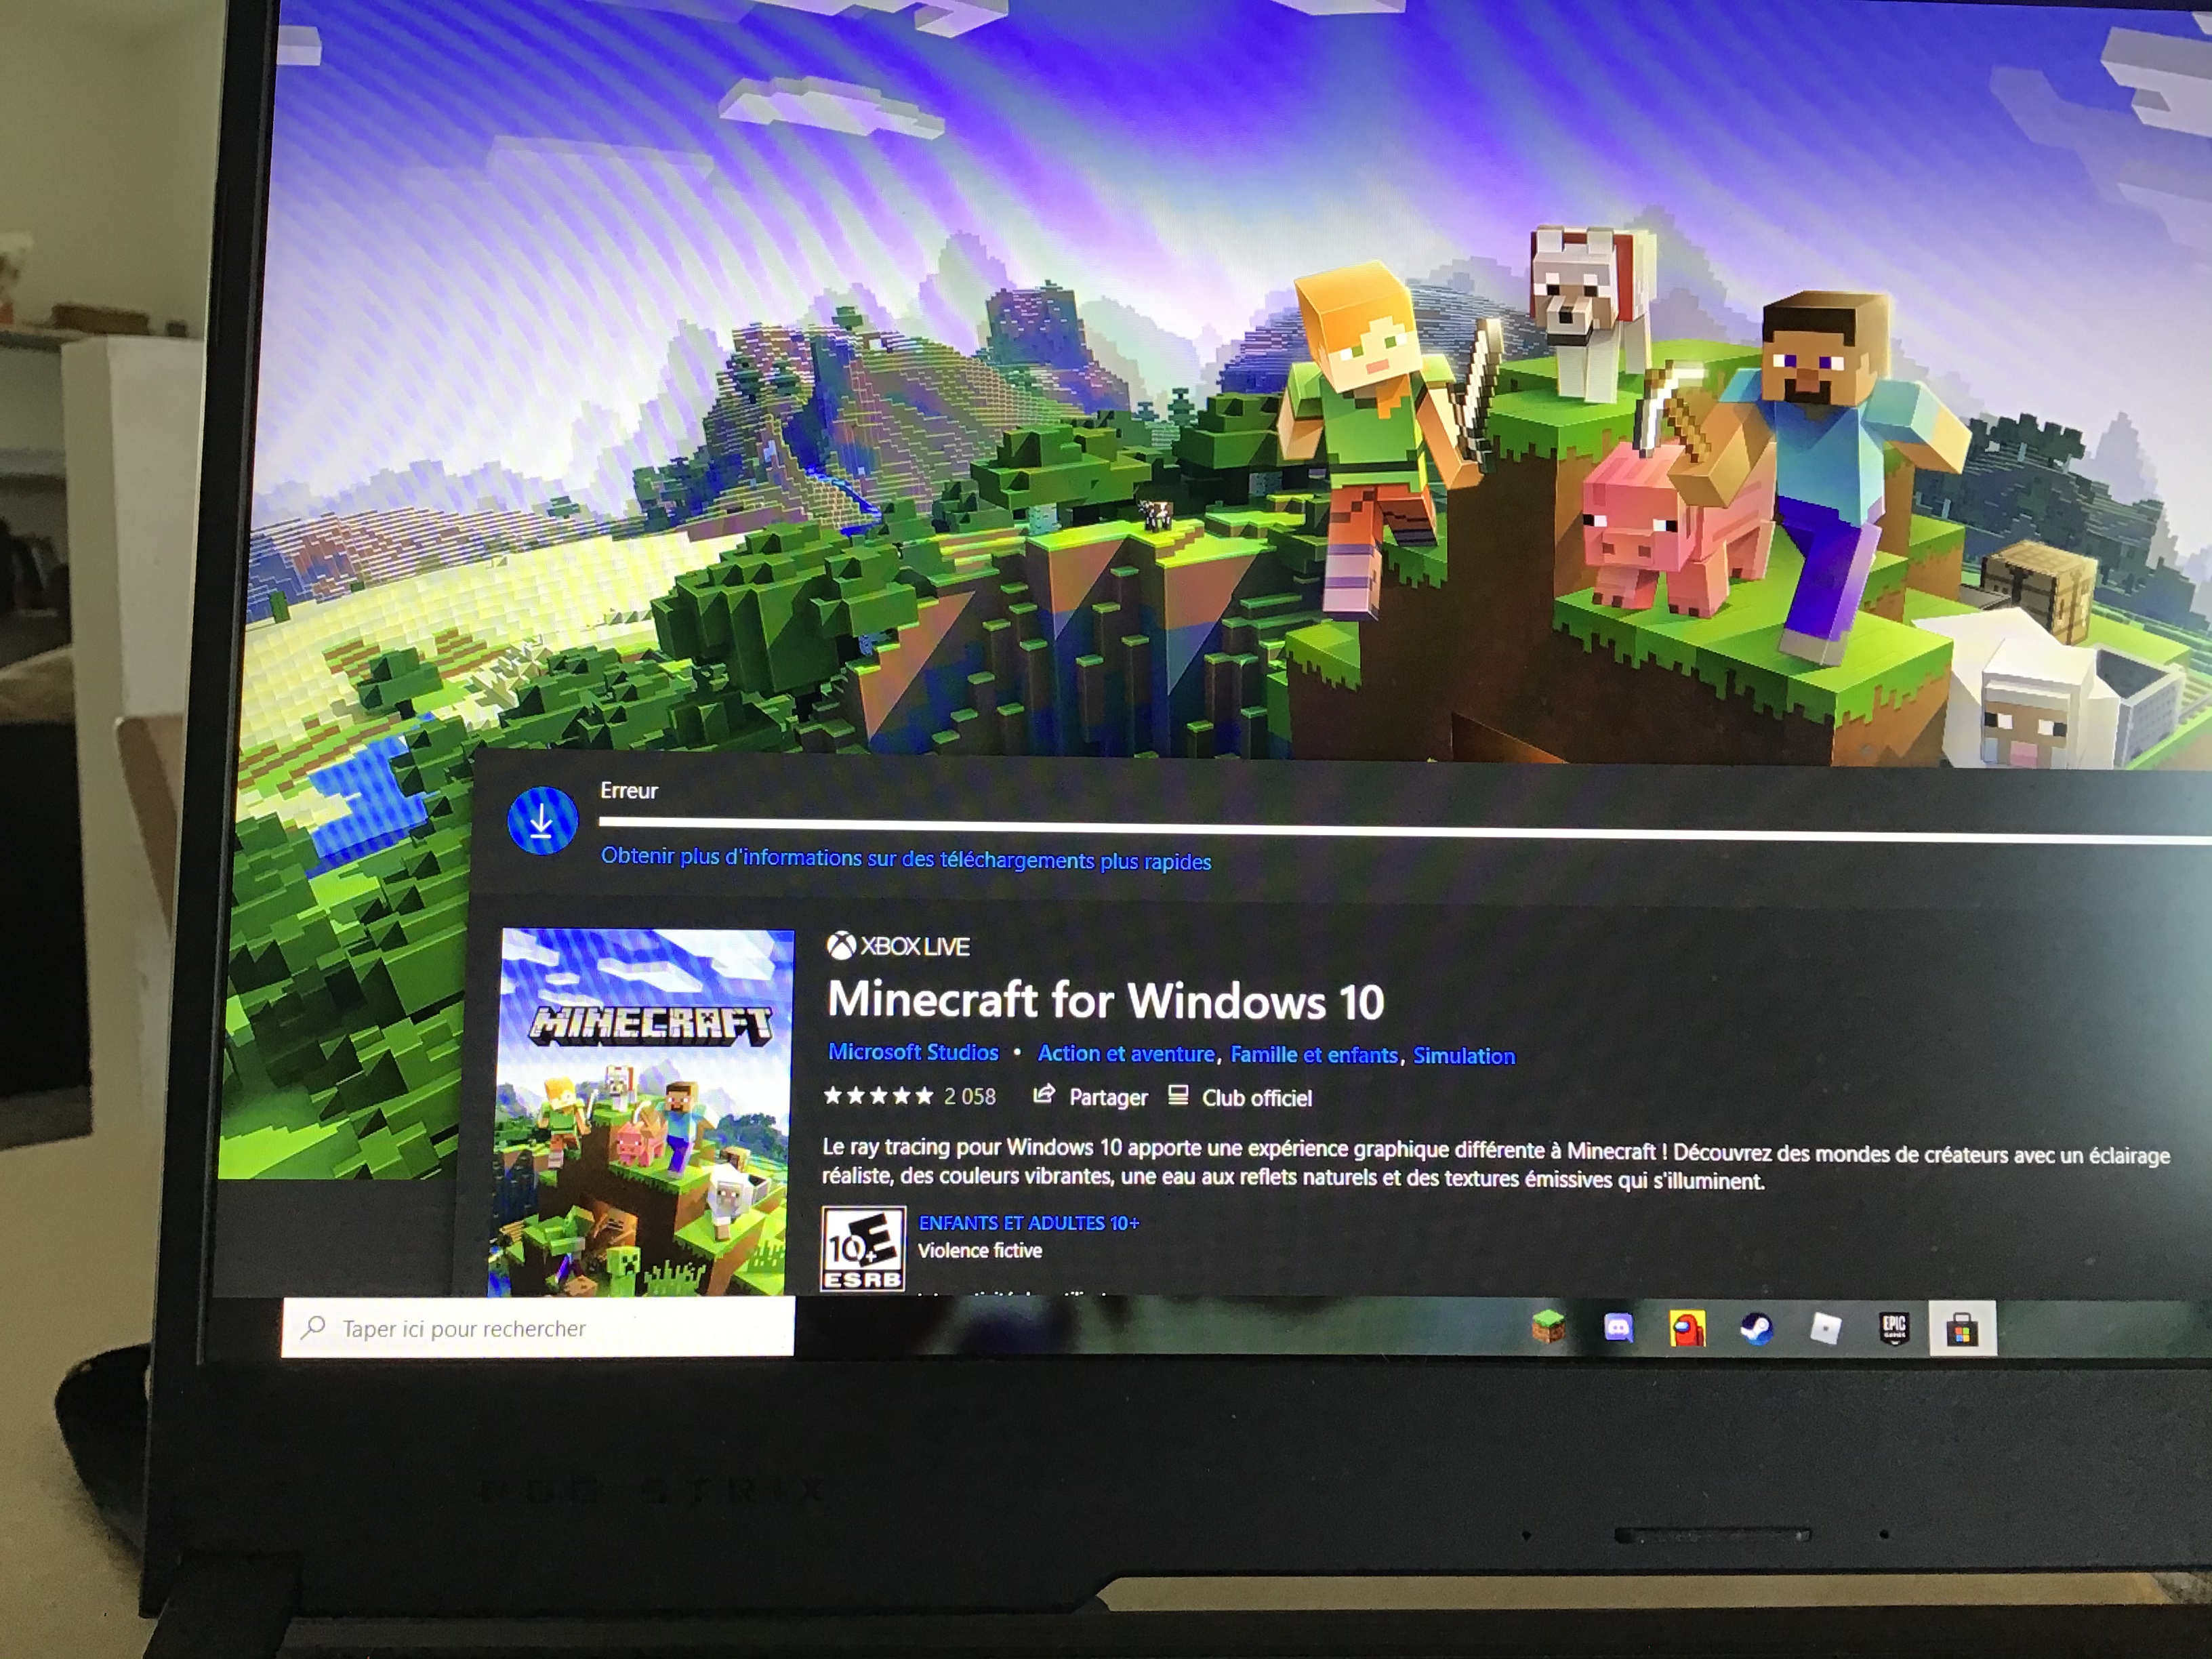 Minecraft révèle accidentellement une nouvelle fonctionnalité inespérée -  Microsoft réagit dans l'urgence